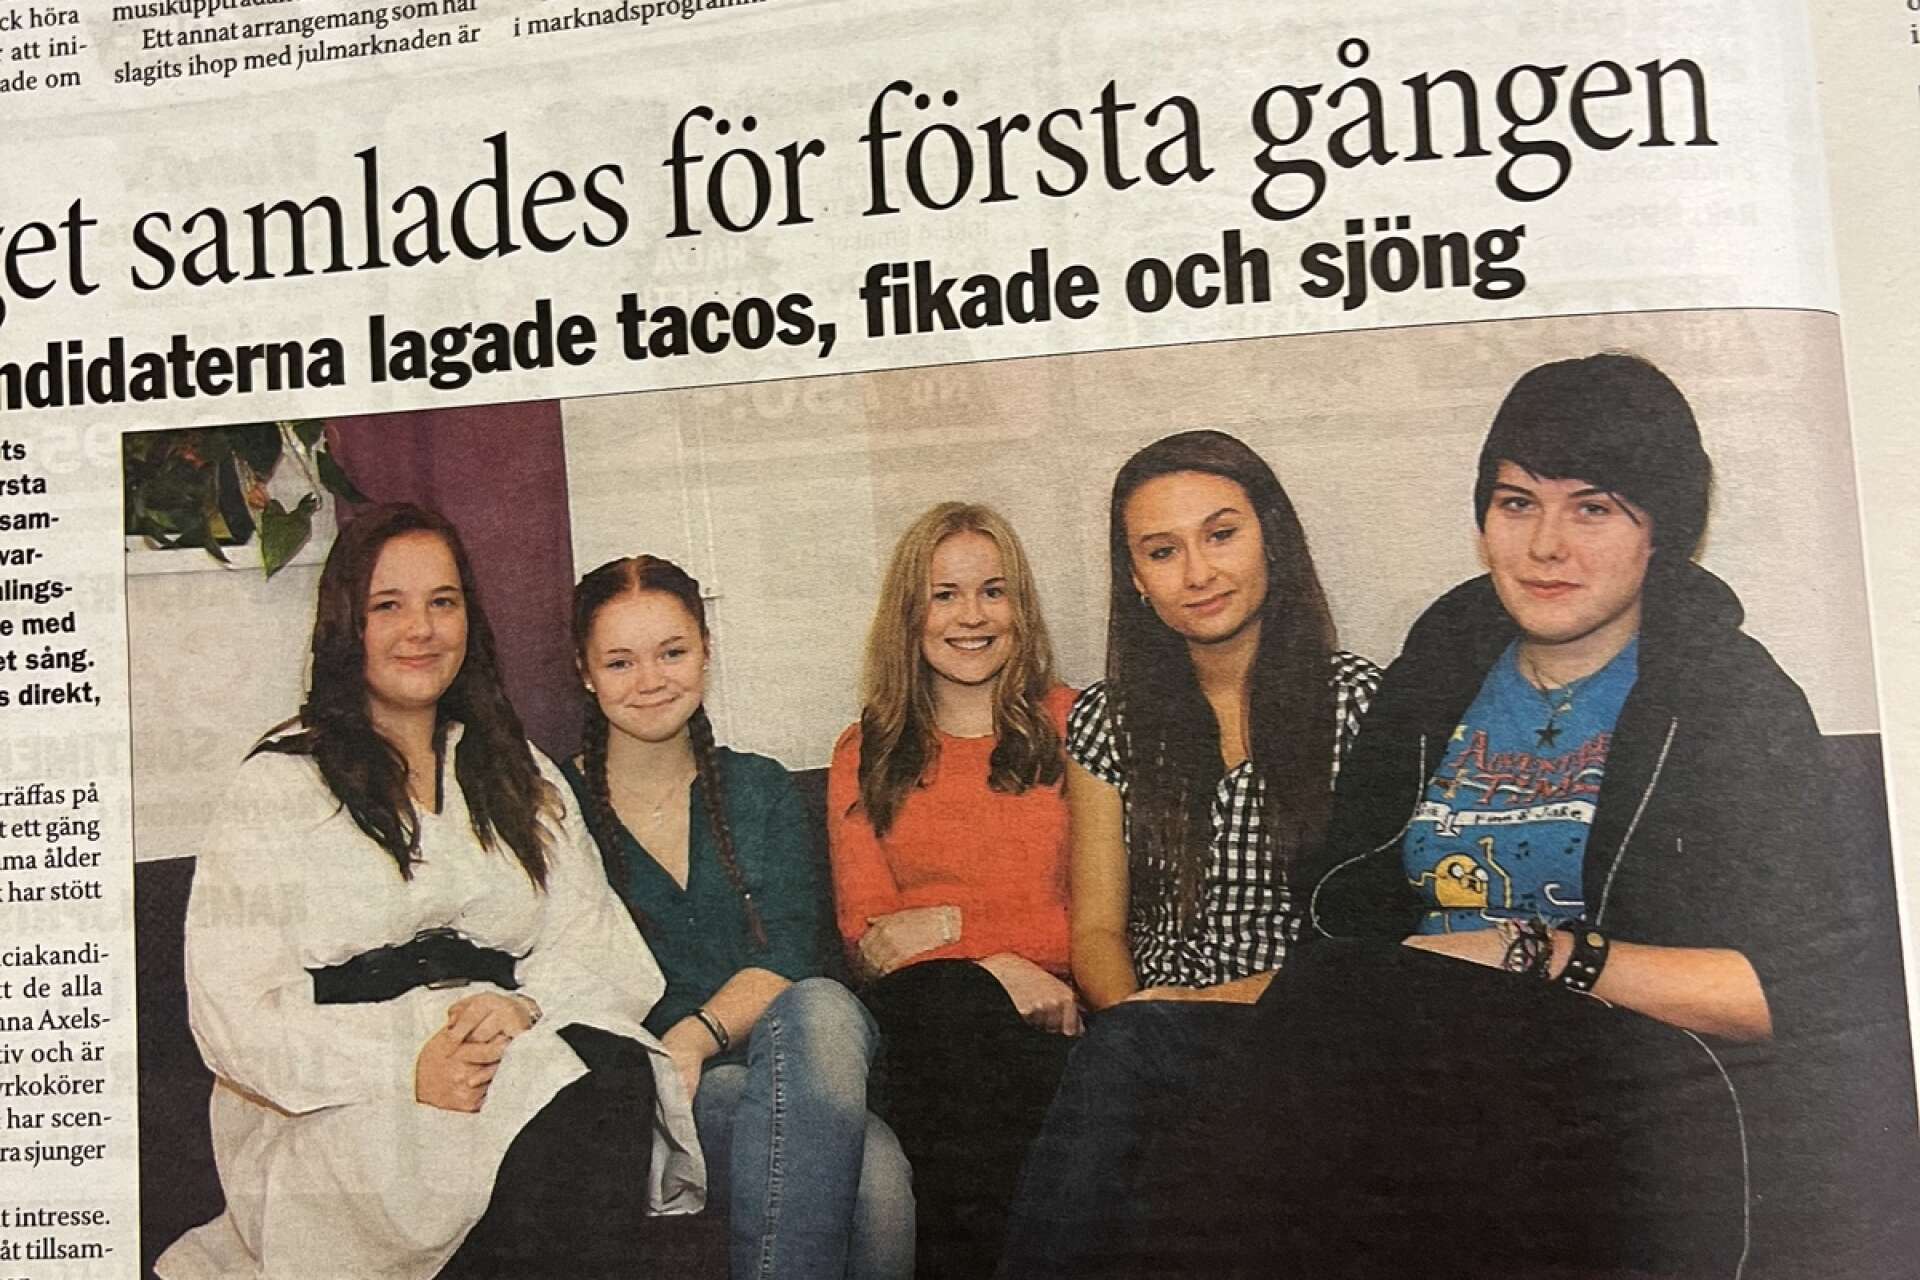 2013 års luciakandidater Sara Molin, Hanna Axelsson, Emelie Höjdén, Maria Hajto och Klara Bernson samlades för första gången för att öva tillsammans. Saknades vid tillfället gjorde den sjätte luciakandidaten Belle Henriksdotter.